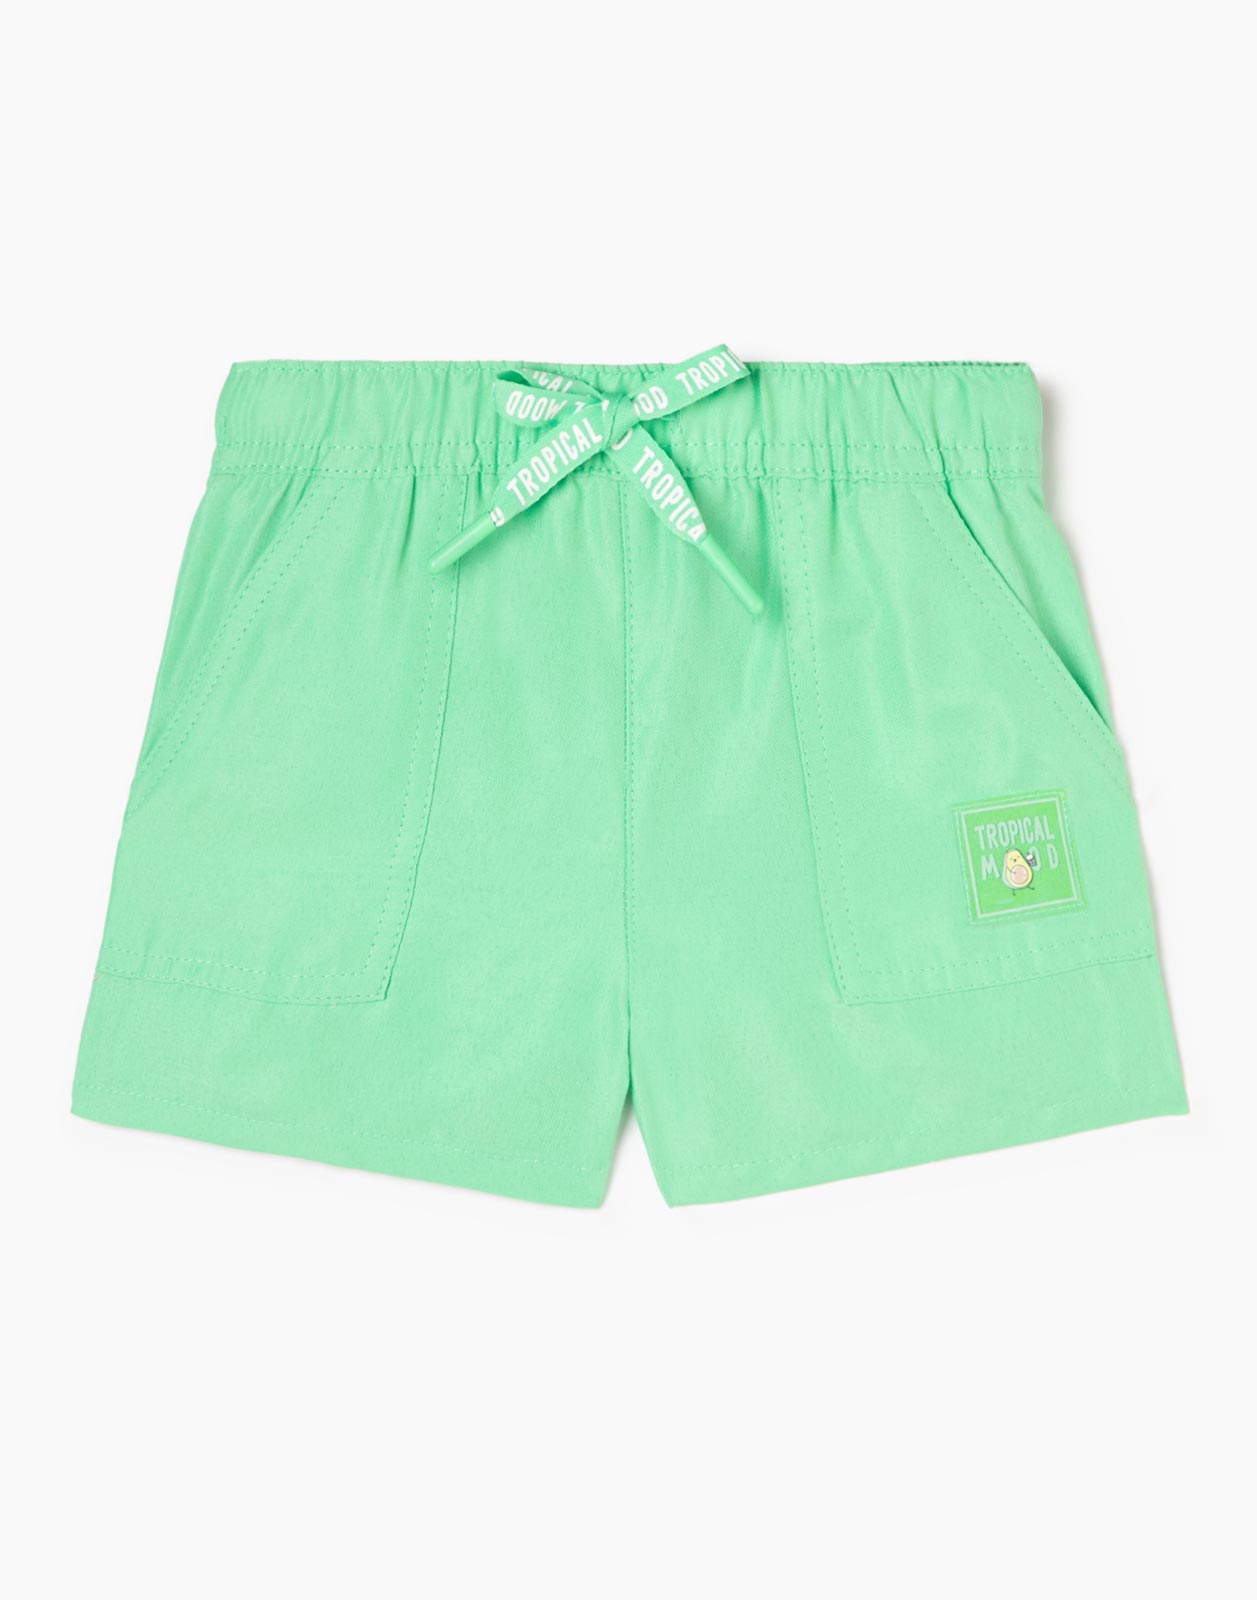 Зелёные шорты с нашивкой Tropical mood для девочки р.86